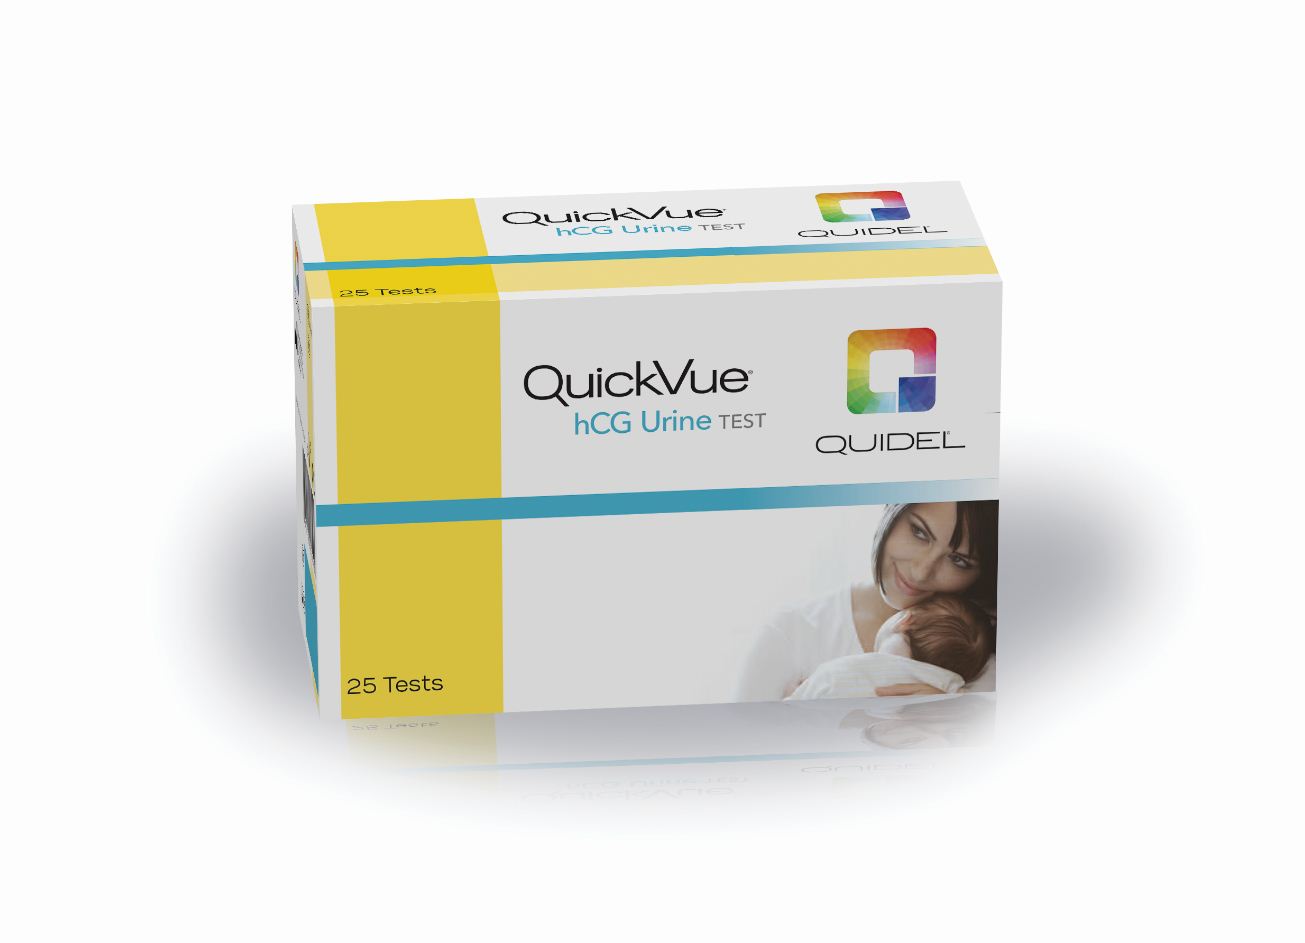 QuickVue One-Step hCG Urine Test